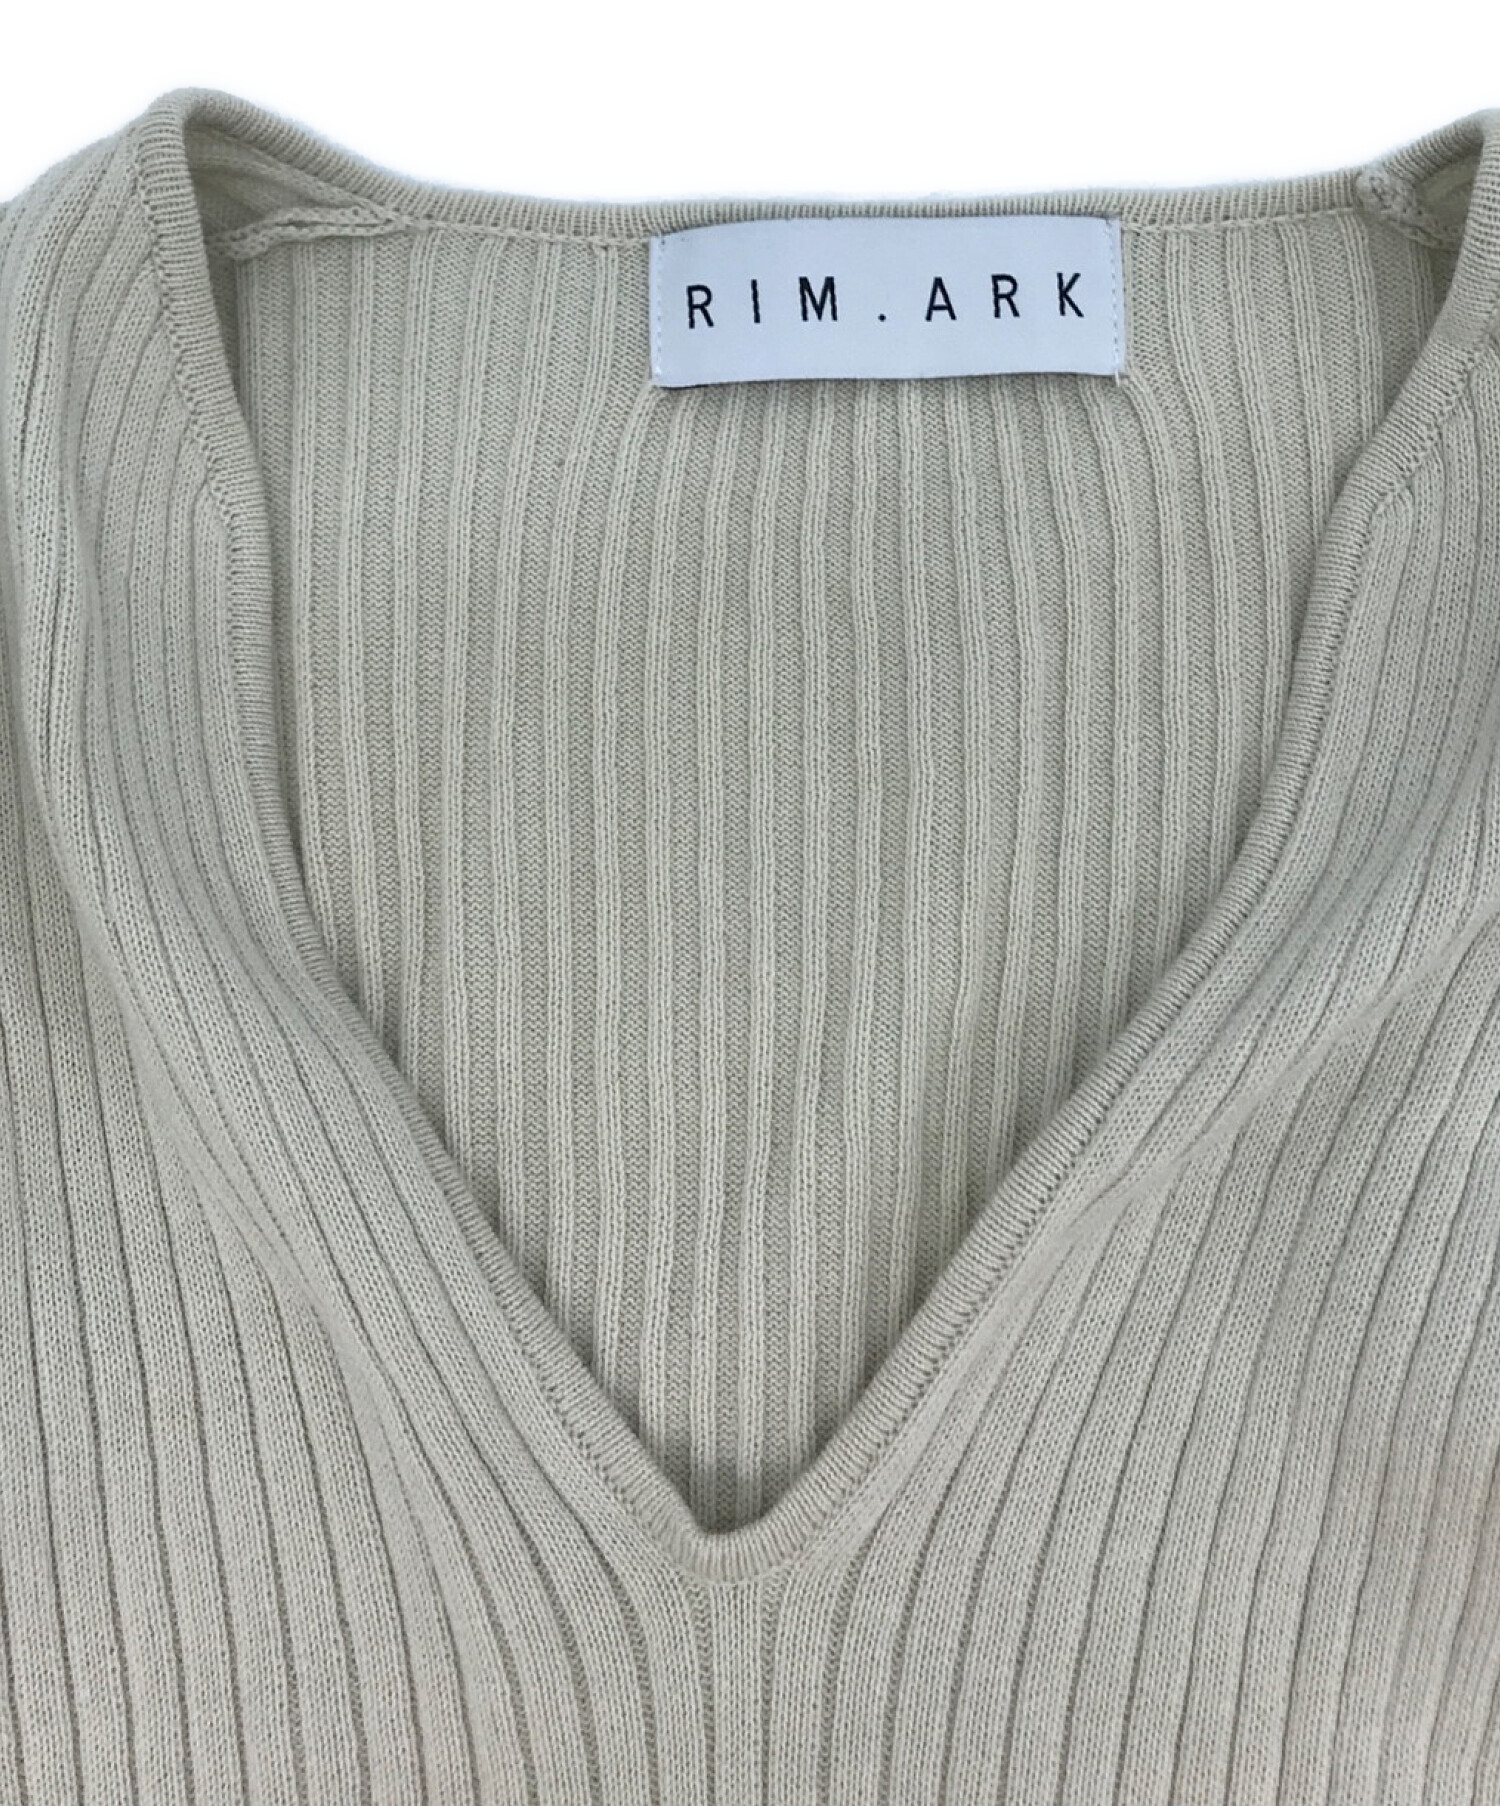 中古・古着通販】RIM.ARK (リムアーク) Rib knit slim tops ベージュ